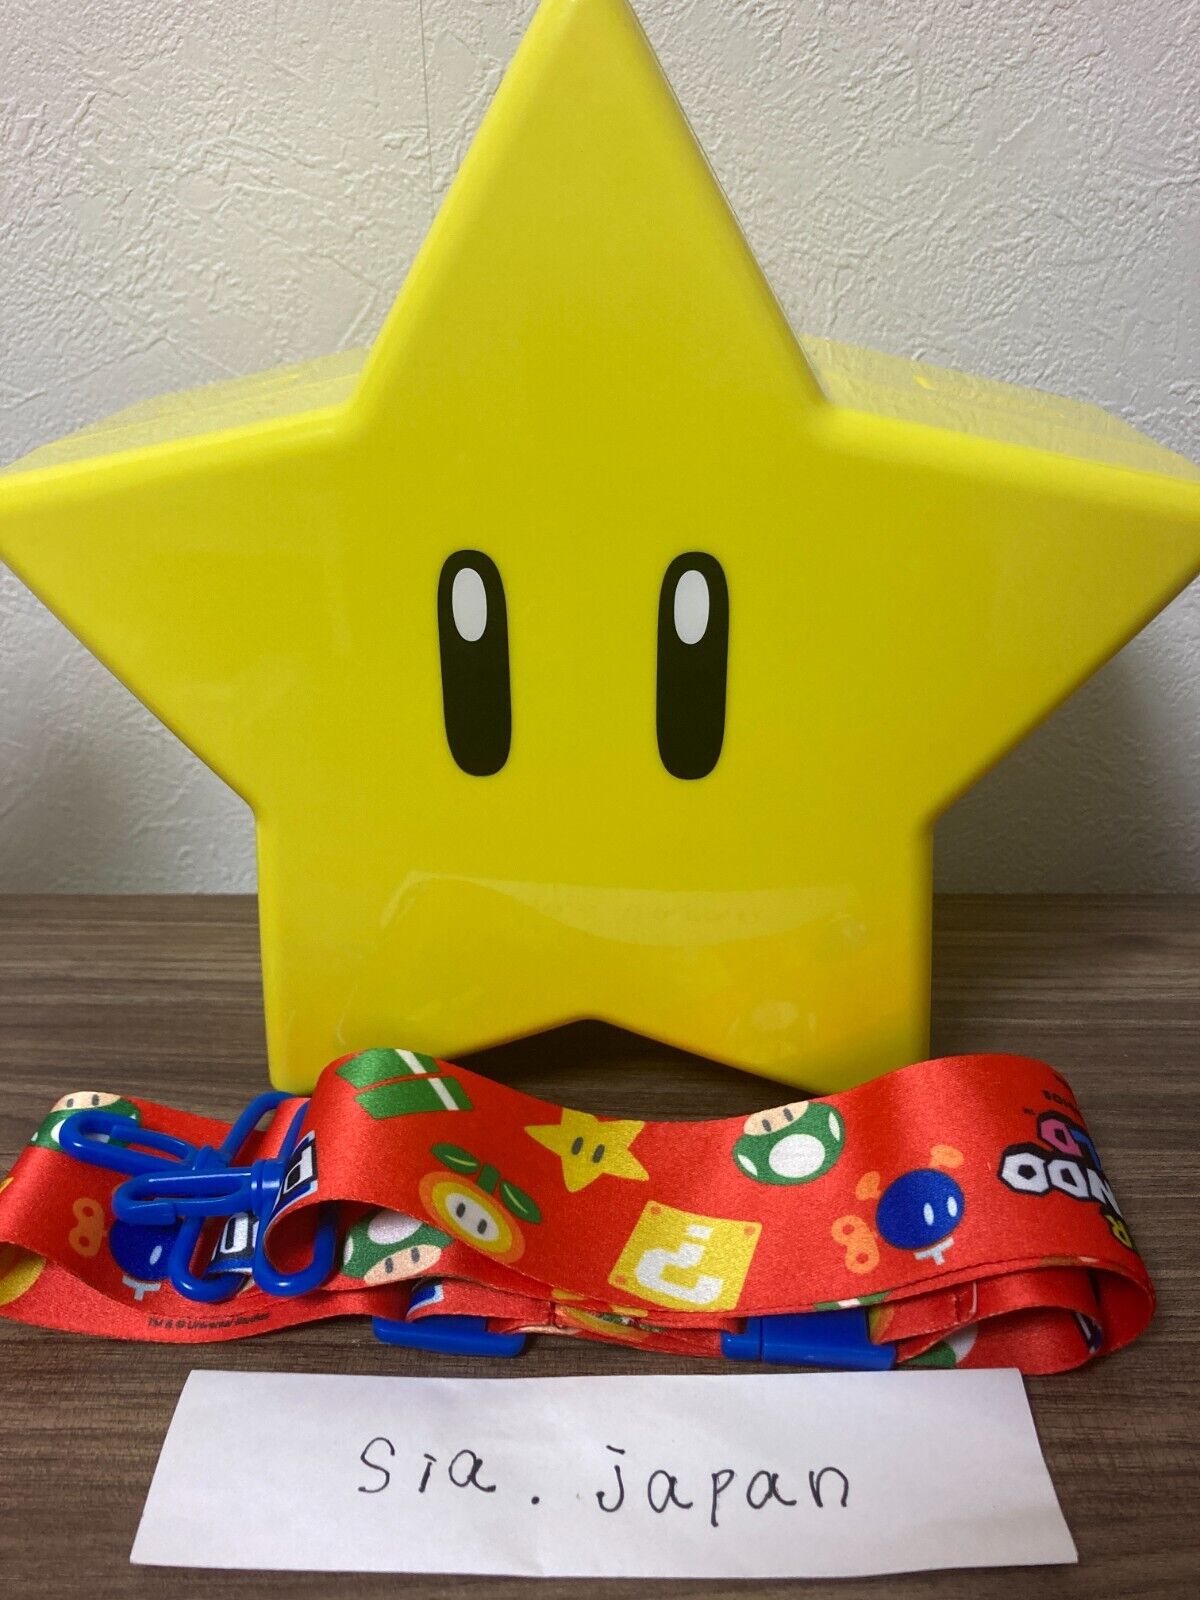 USJ Mario Star Popcorn Bucket Super Nintendo World LED Light 7.8\